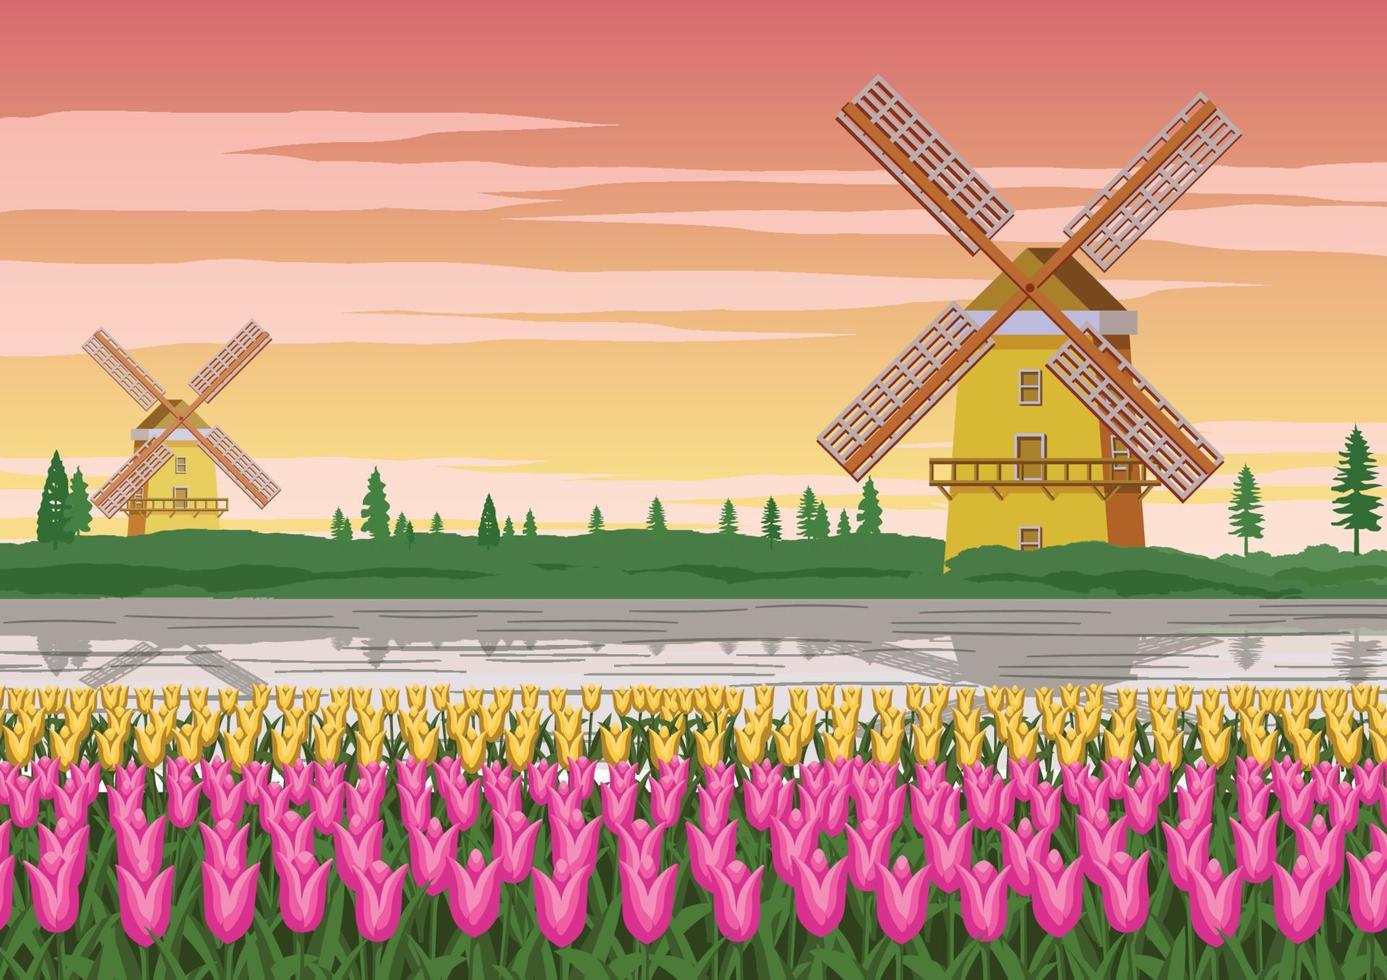 Tulpengarten, berühmtes Symbol von Holland und Windmühle mit wunderschöner Natur, Vintage-Farbe vektor